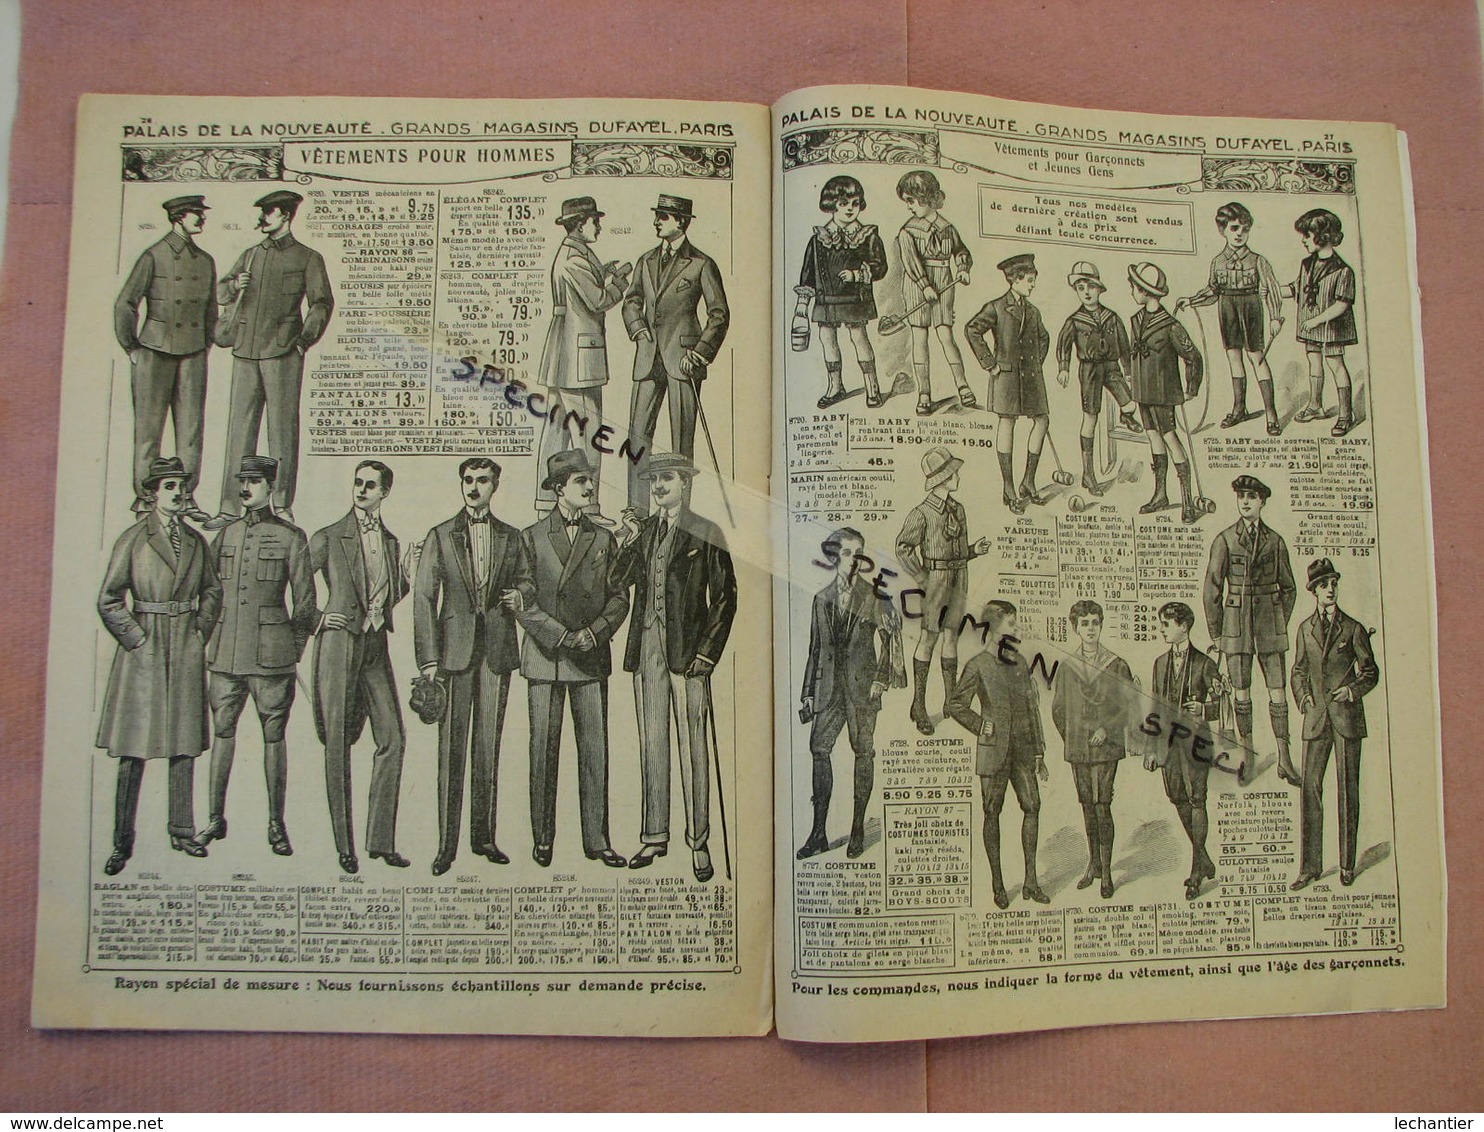 Palais de la Nouveauté 1910 catalogue 32 pages 20X26  T.B.E. mode femme, enfant, homme  couverture couleur...